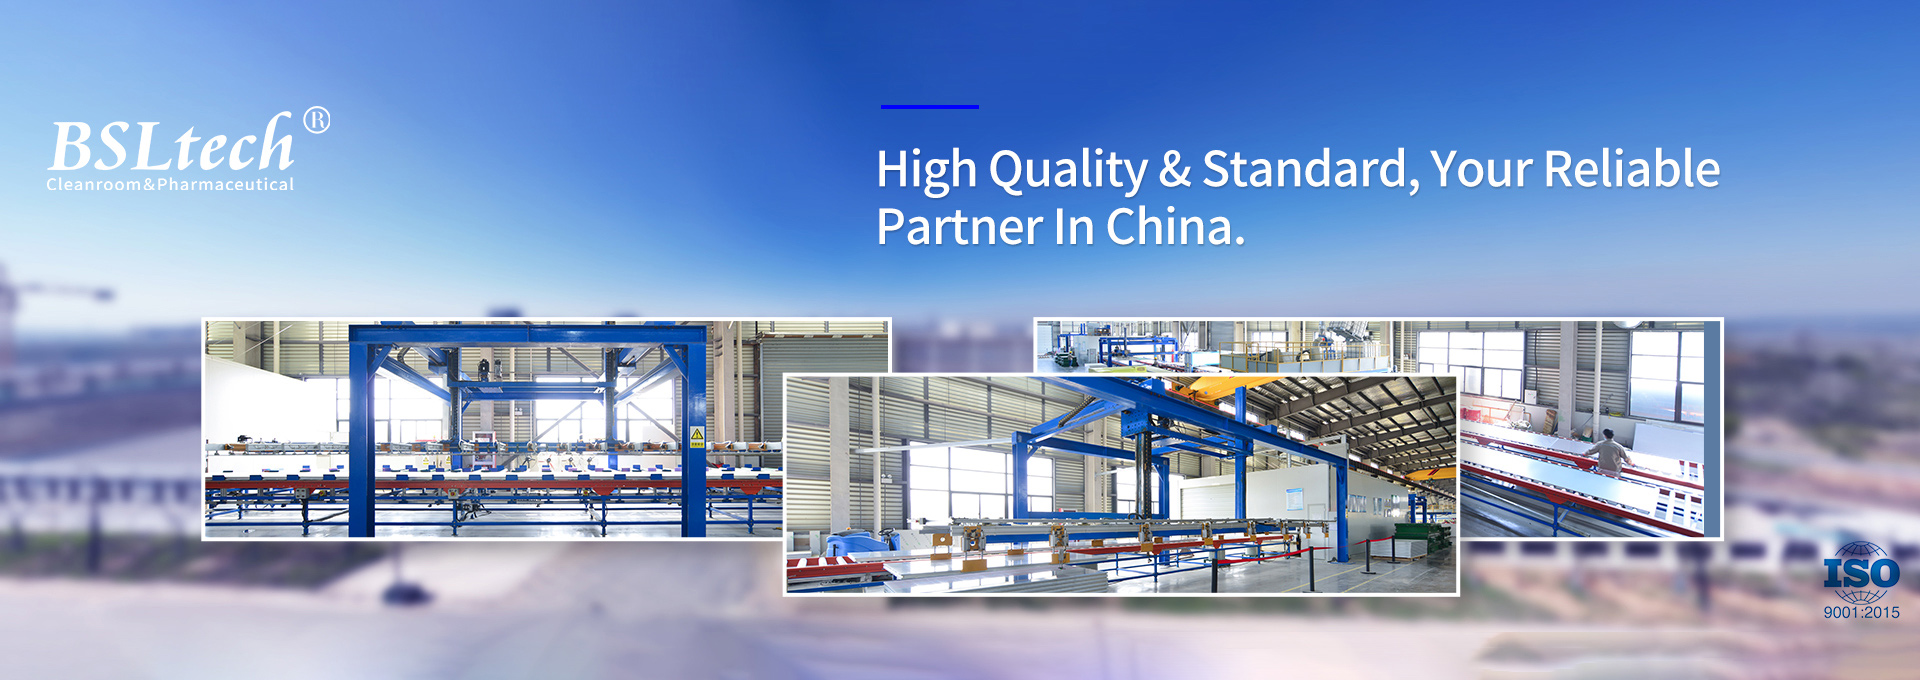 Alta qualidade e padrão, seu parceiro confiável na China